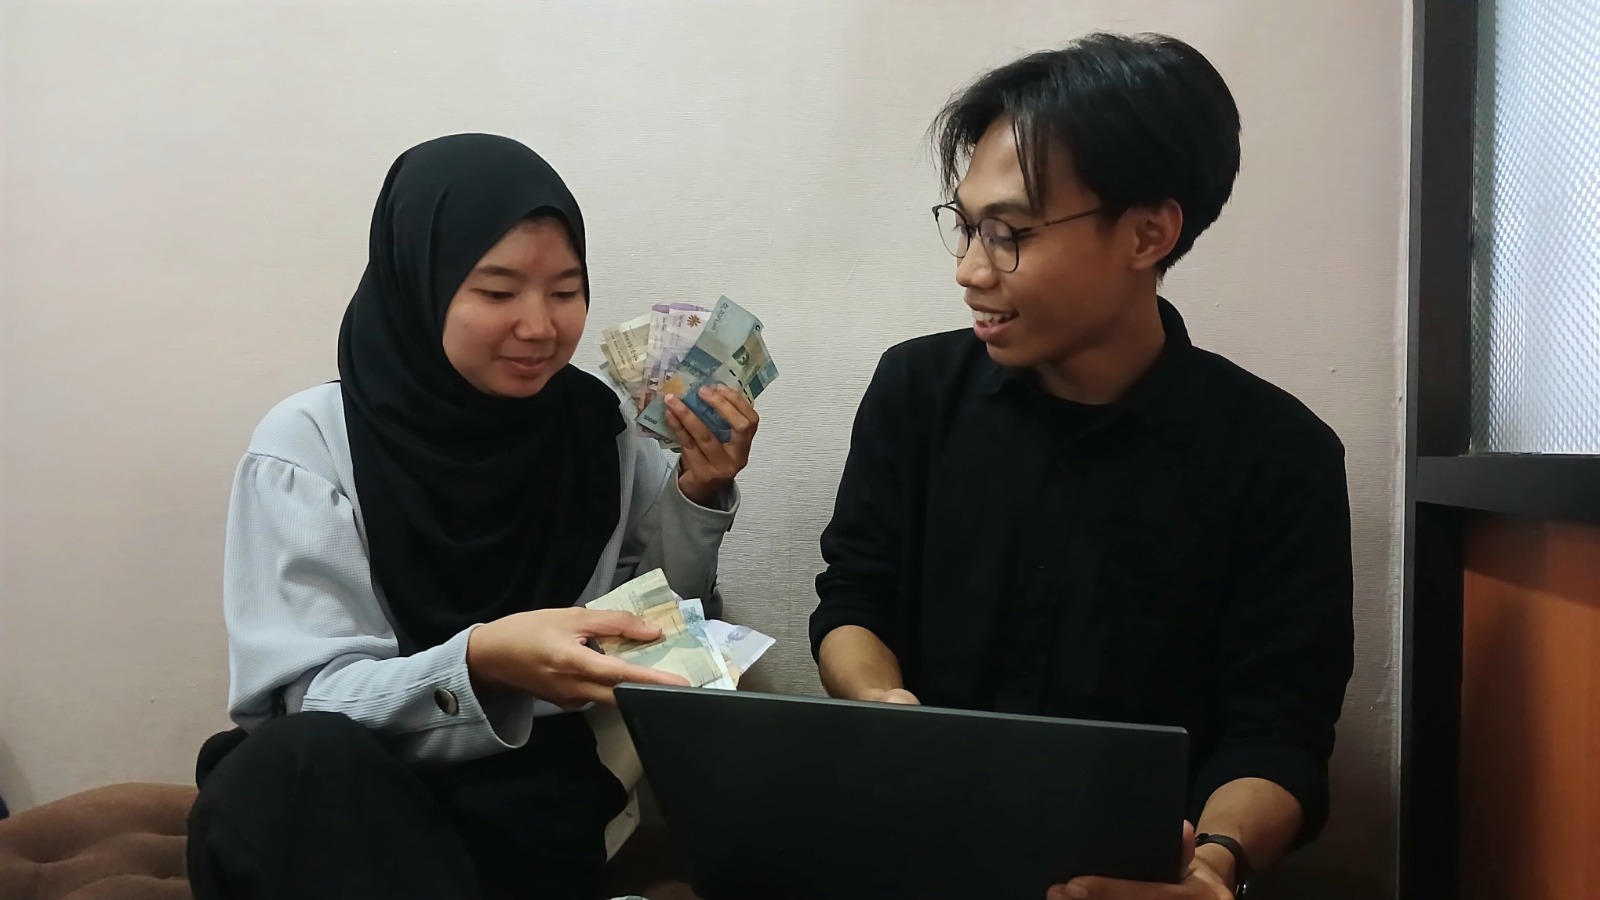 Pasangan muda bisa ikuti tips mengatur keuangan dosen UMM (Foto: Istimewa). Keuangan seringkali menjadi